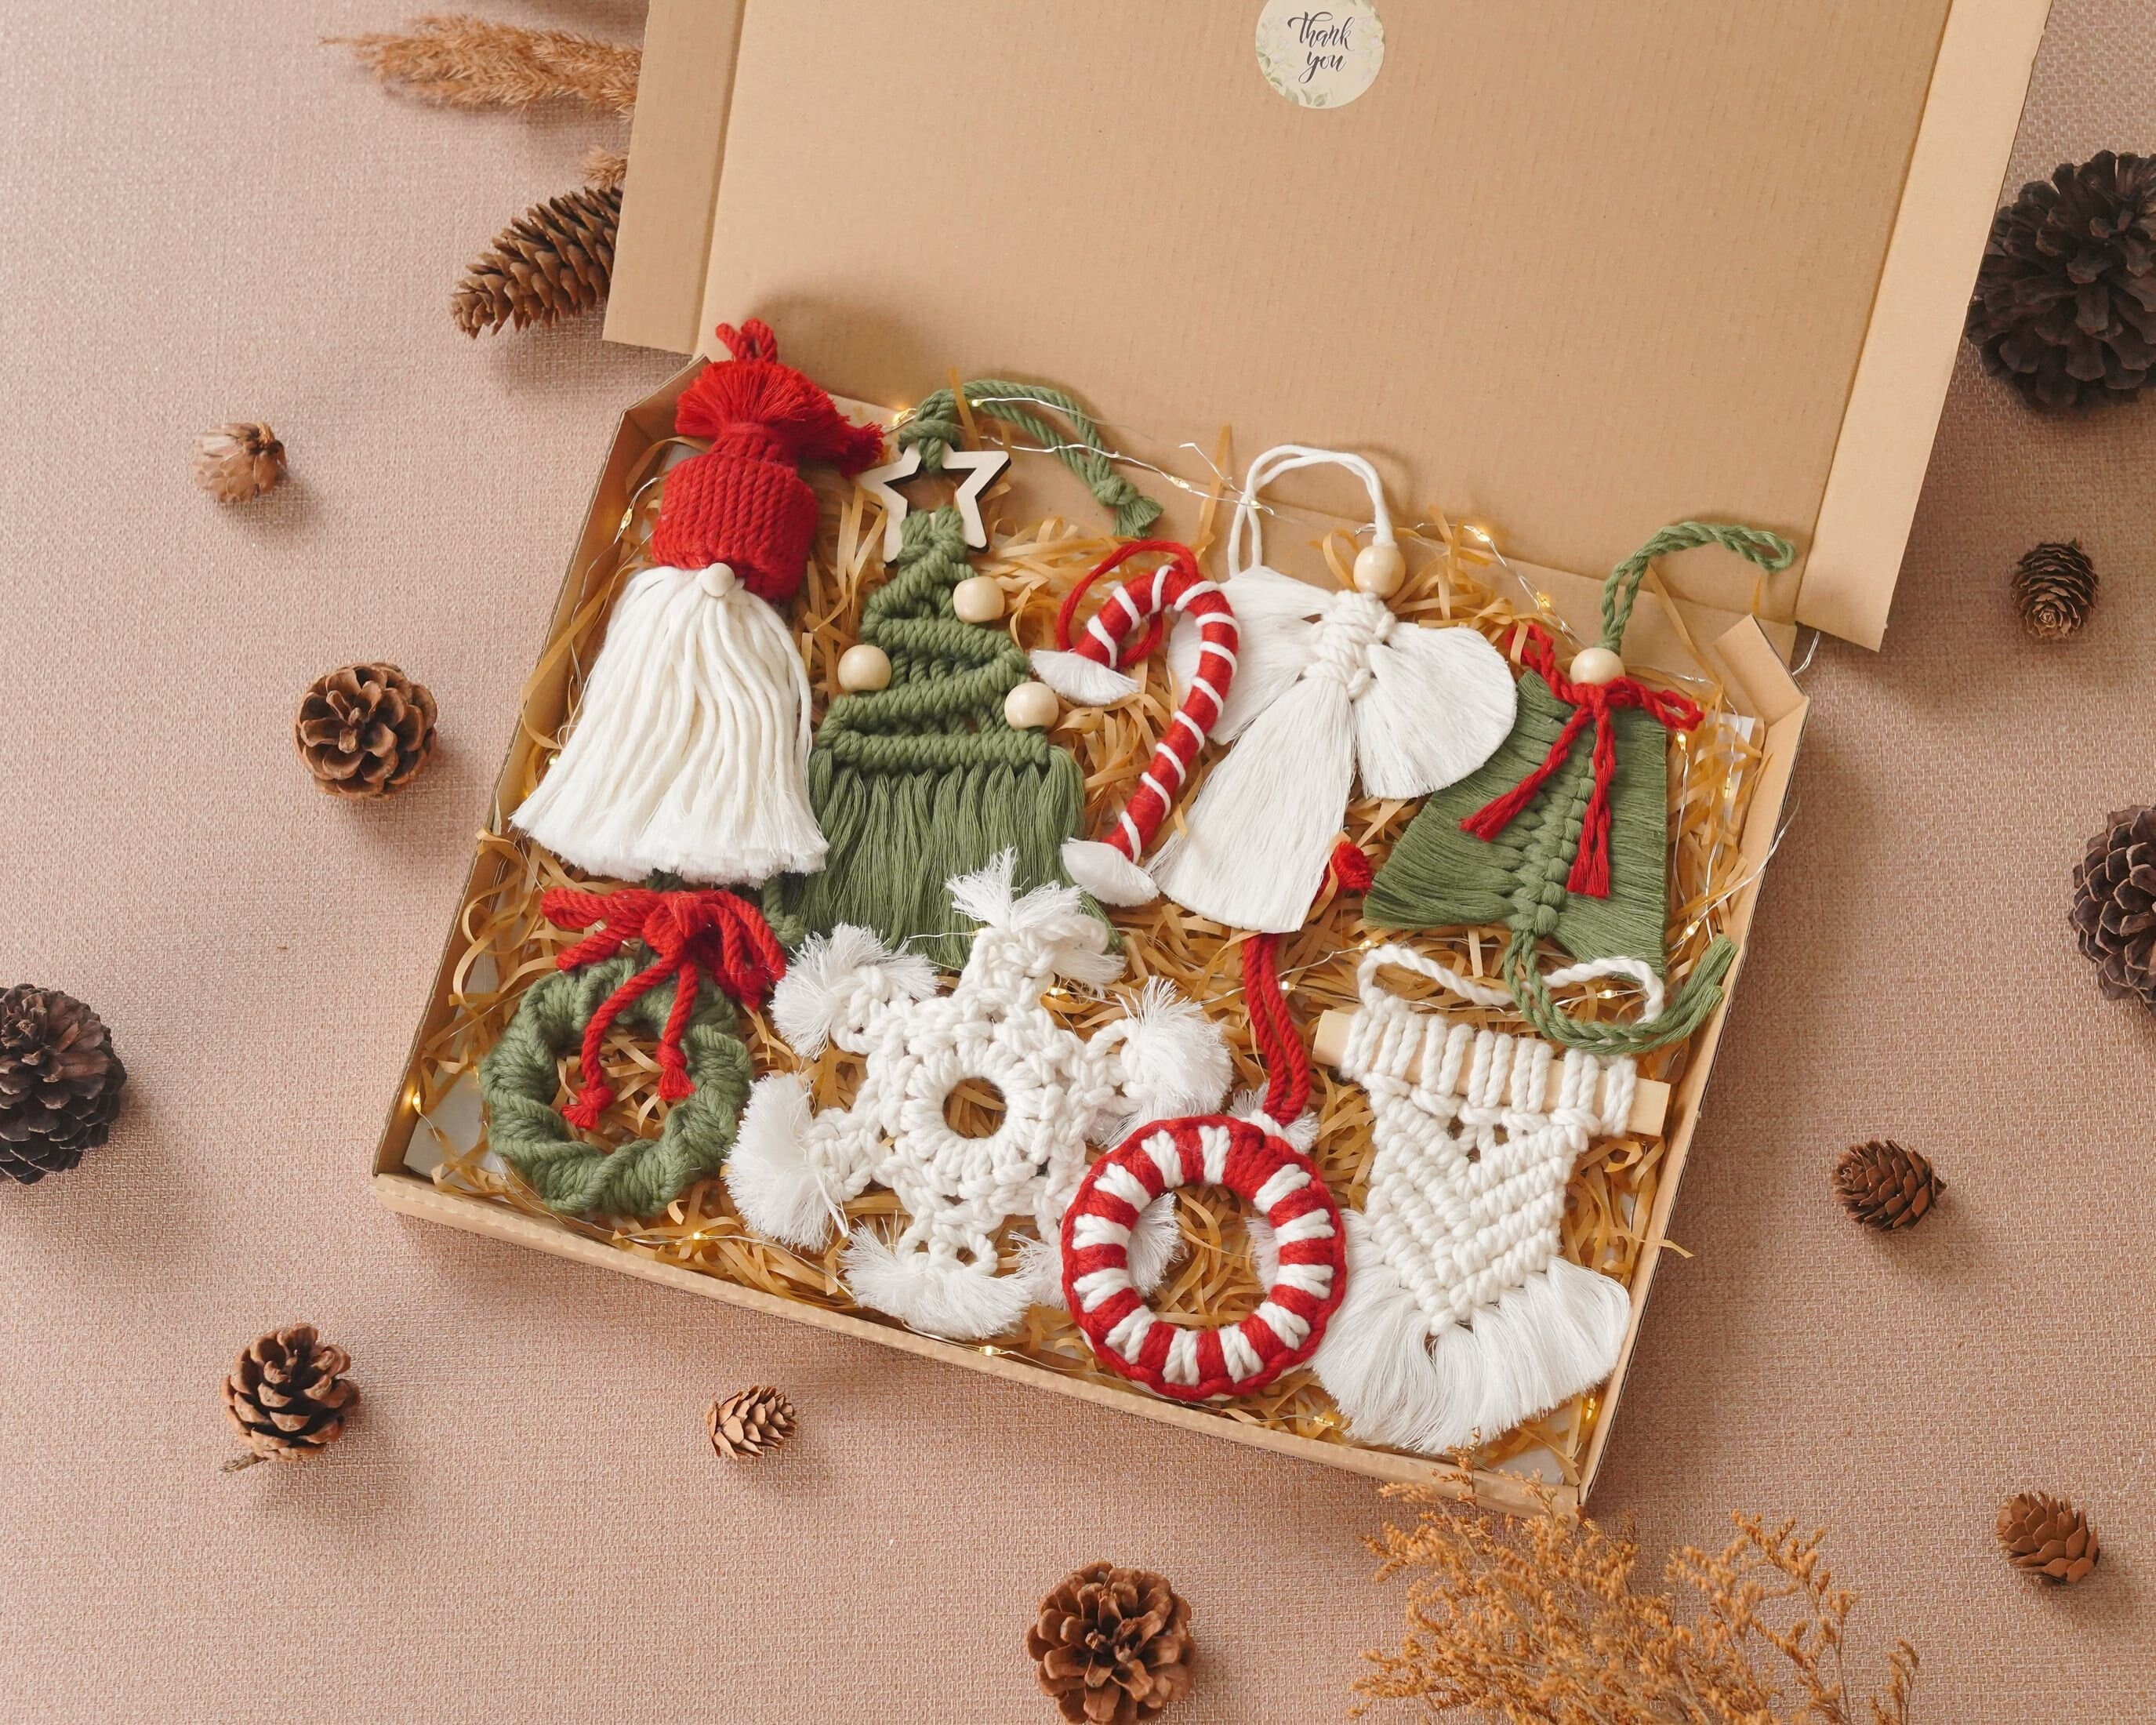 Von Maur Red, Green, White With Glitter Glass Christmas Ornament Original  Box